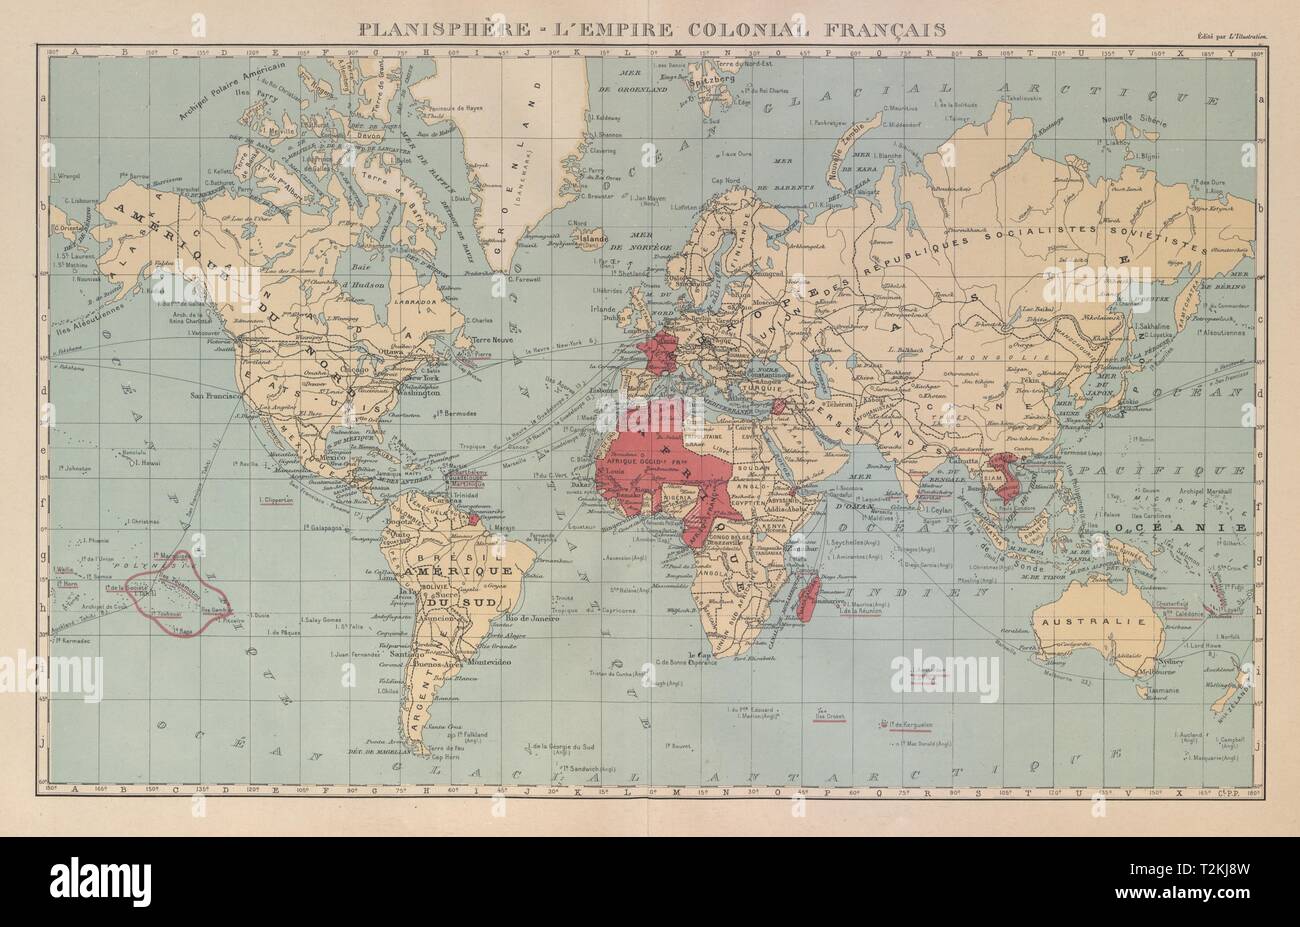 Imperio colonial francés Français. West/África Ecuatorial Francesa &c 1931 viejo mapa Foto de stock